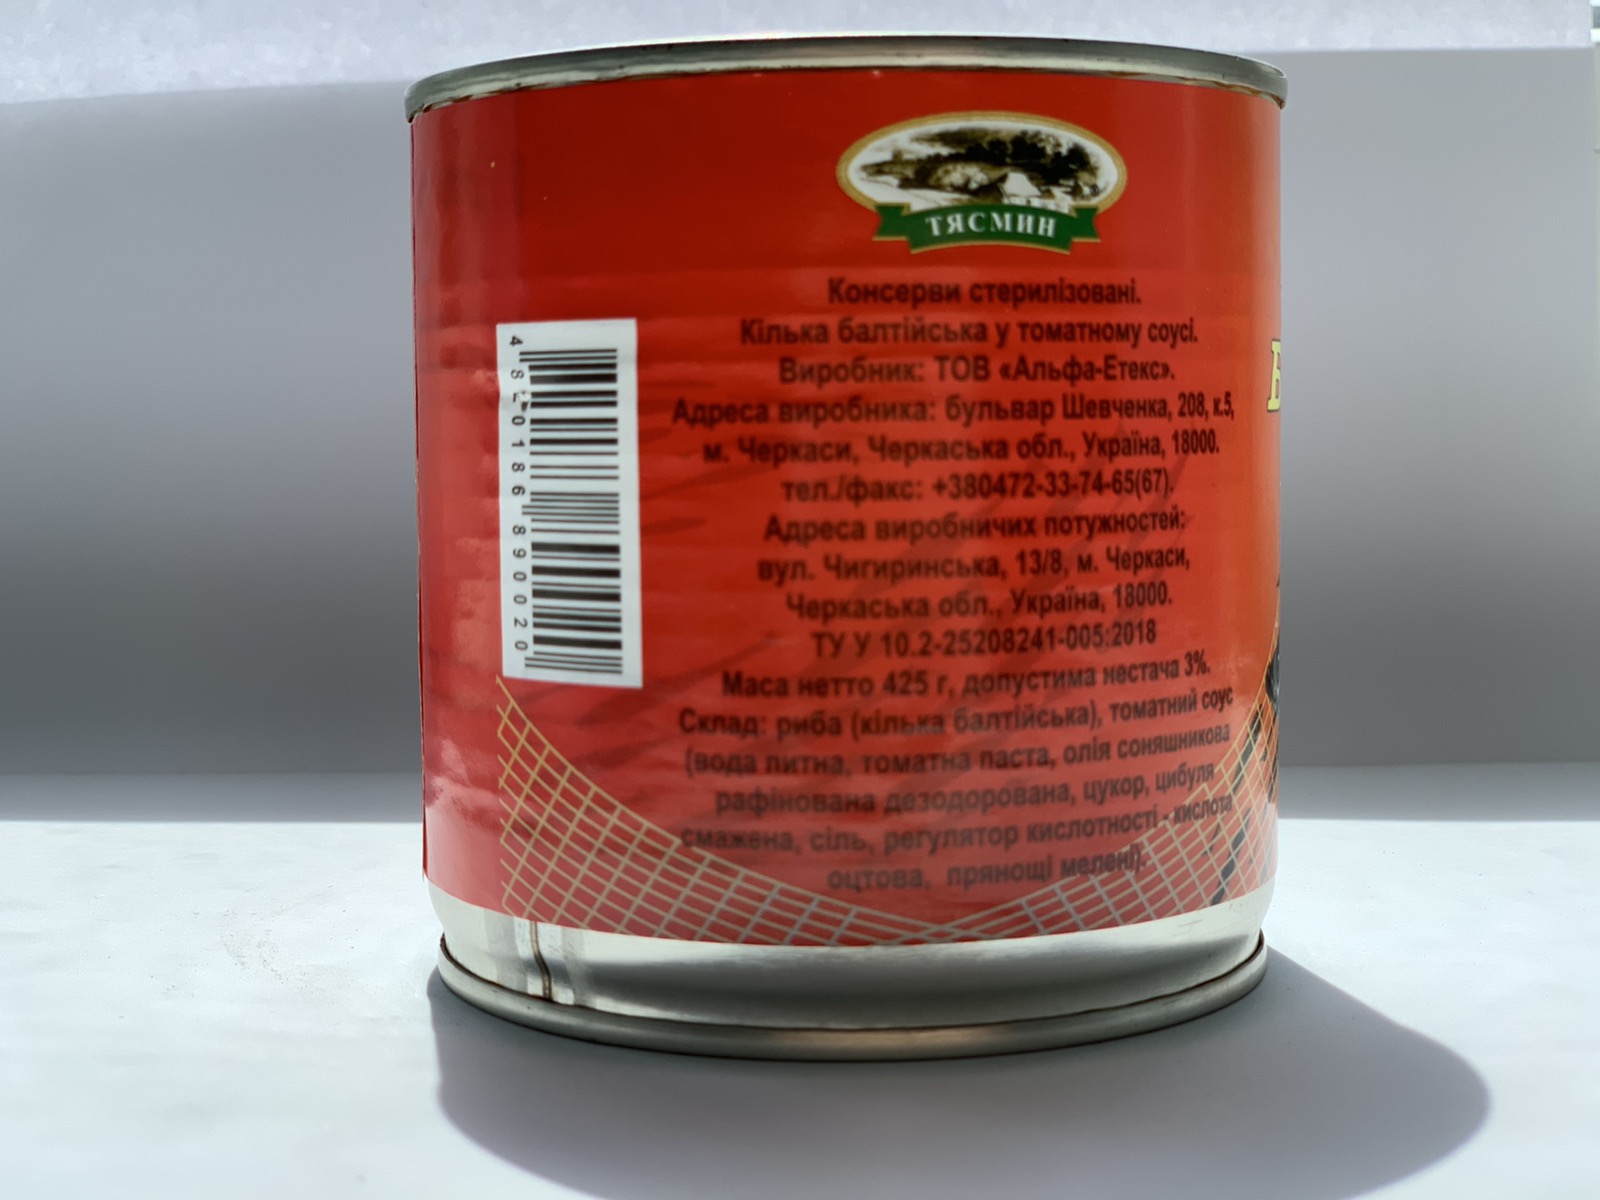 Килька Балтийская в томатном соусе. Только опт  - фотография